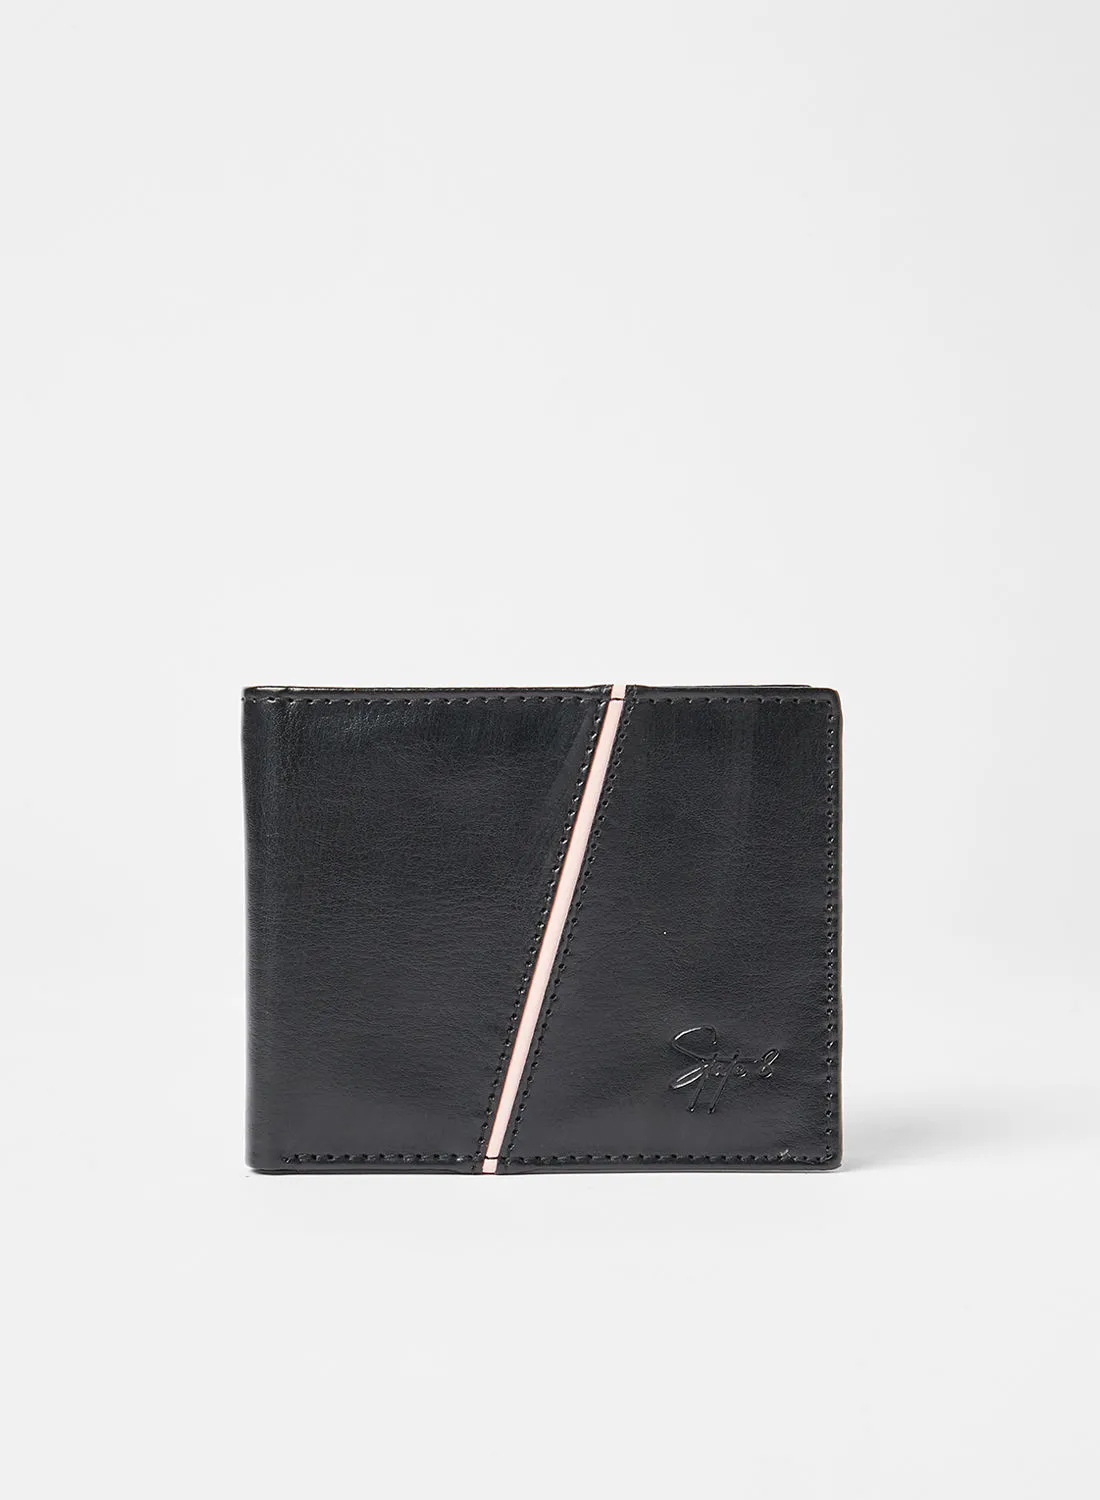 STATE 8 Stripe Bi-Fold Wallet Black